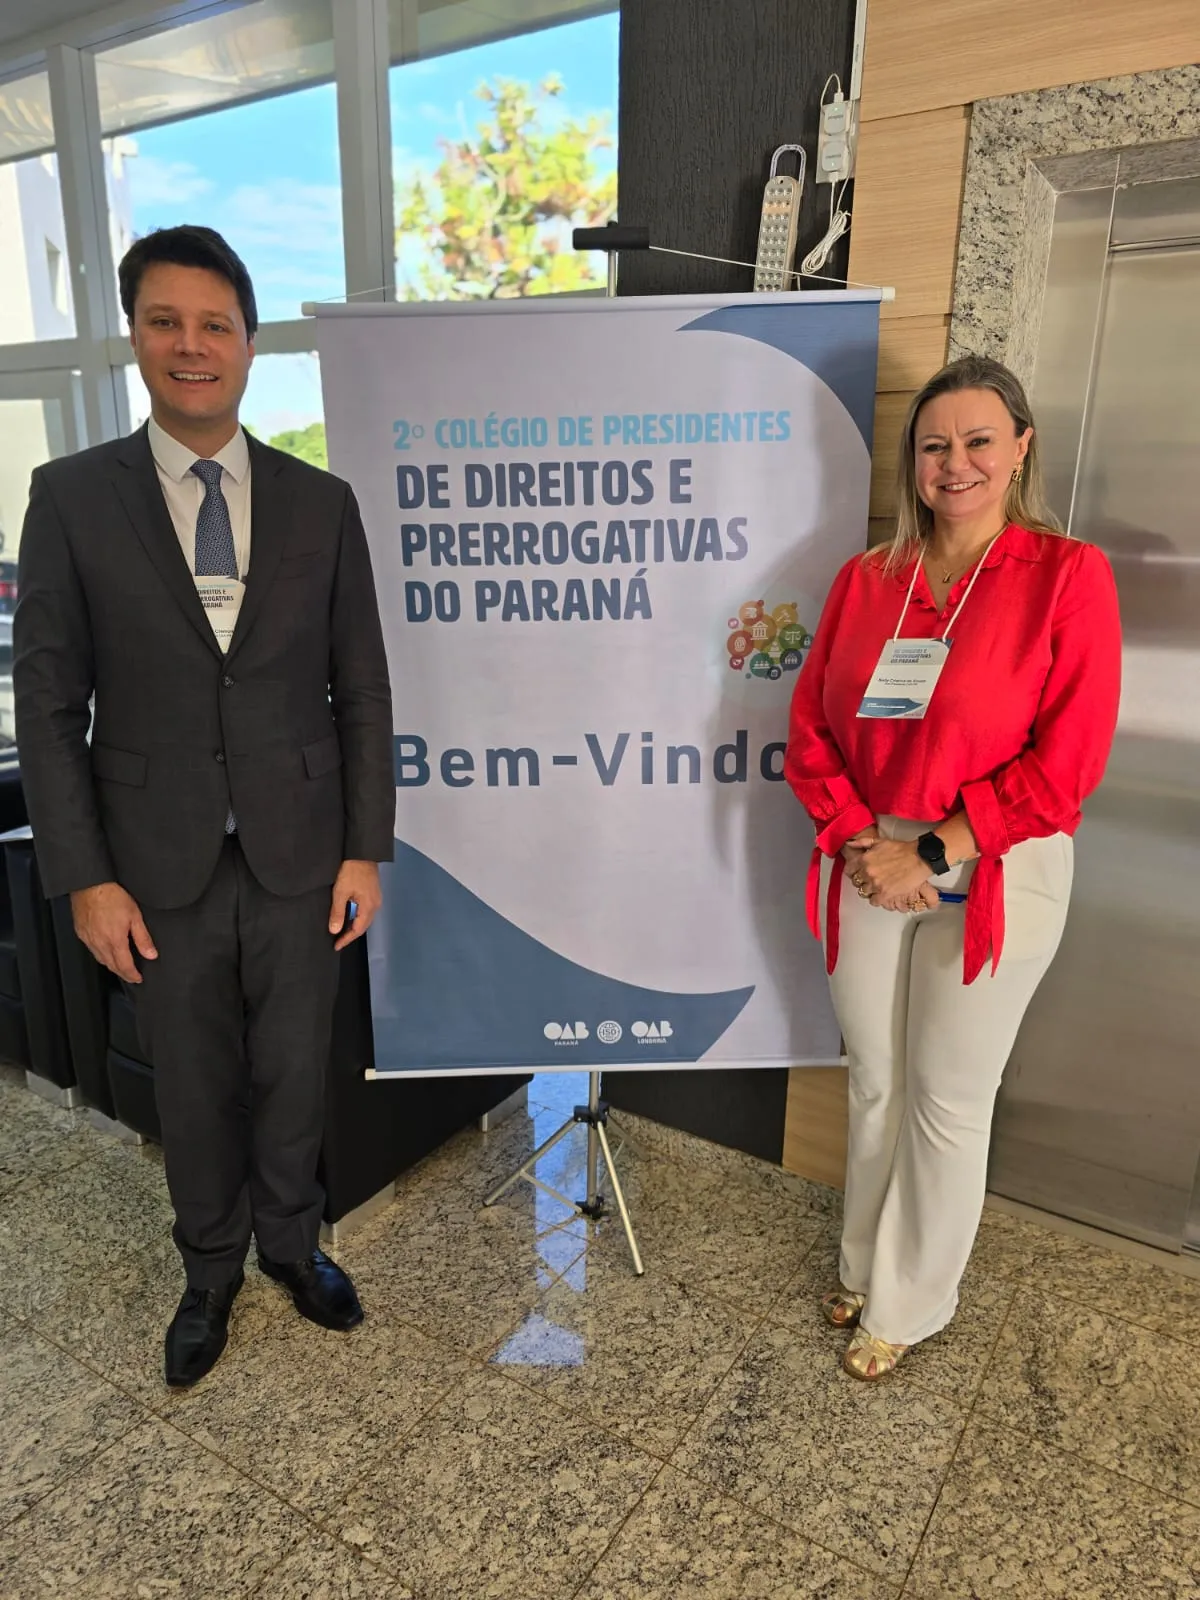 Presidente da CAAPR participa do 2º Colégio de Presidentes de Direitos e Prerrogativa do Paraná, em Londrina